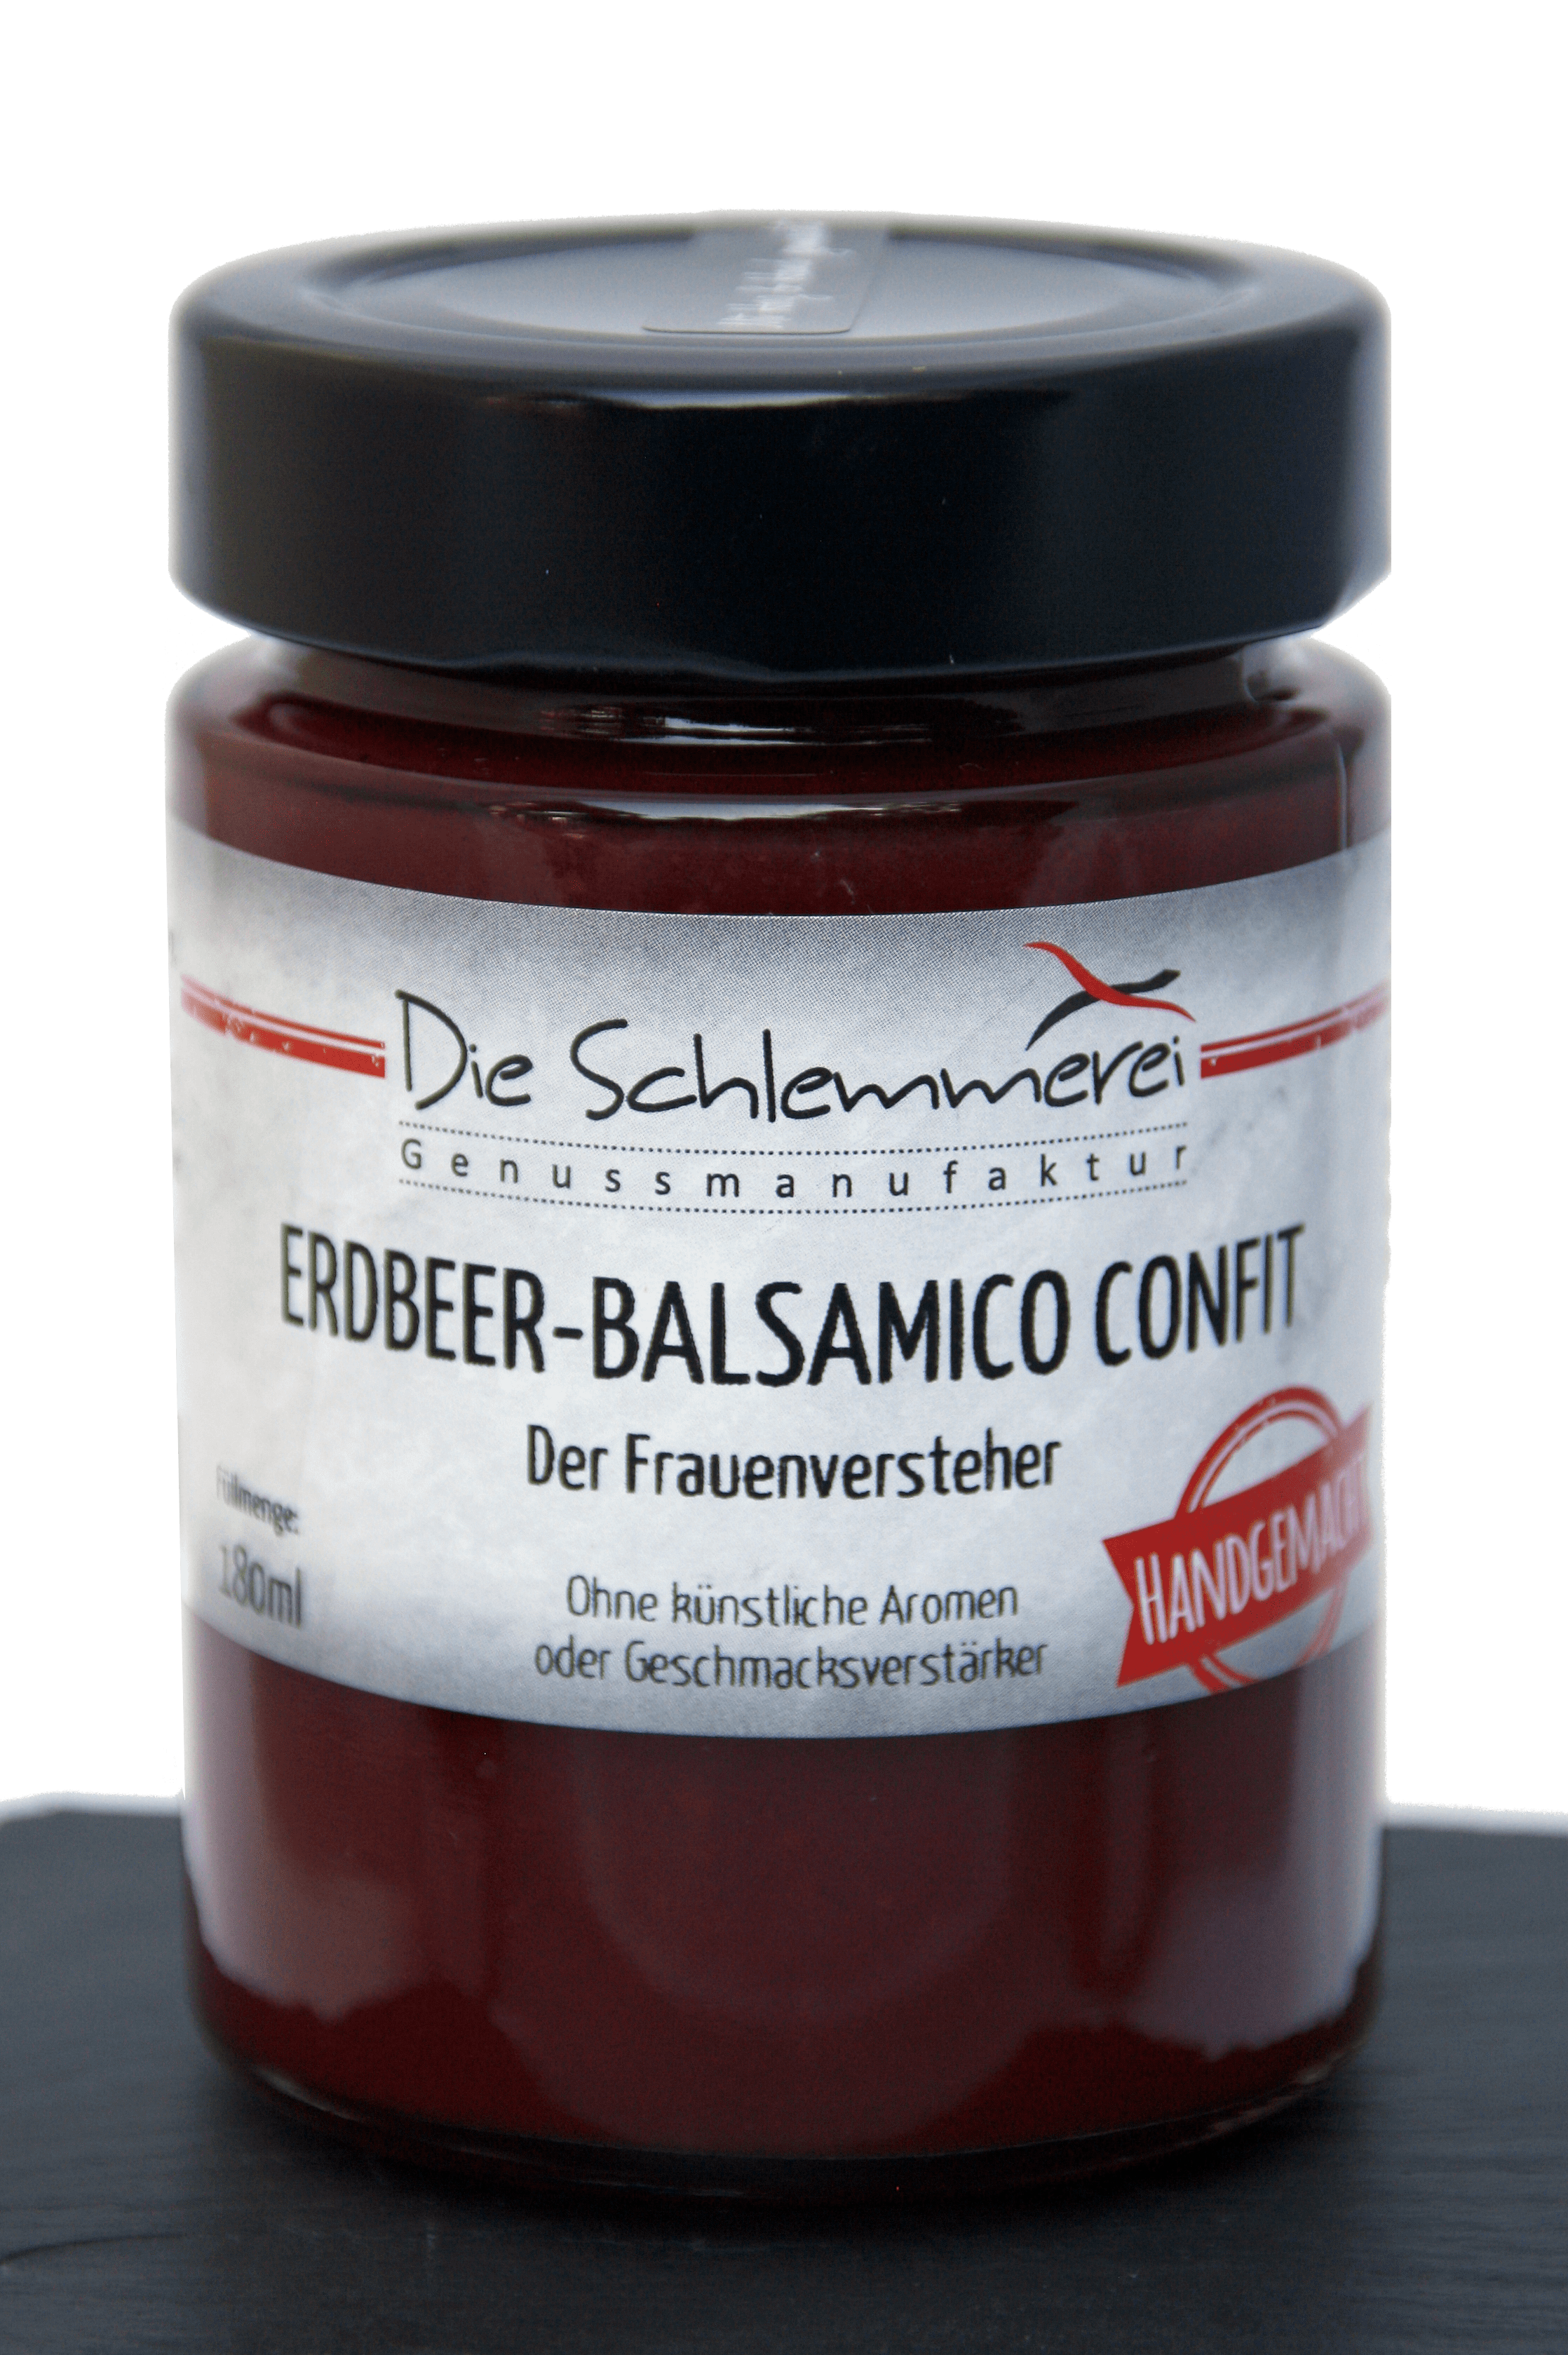 Erdbeeer-Balsamico Confit